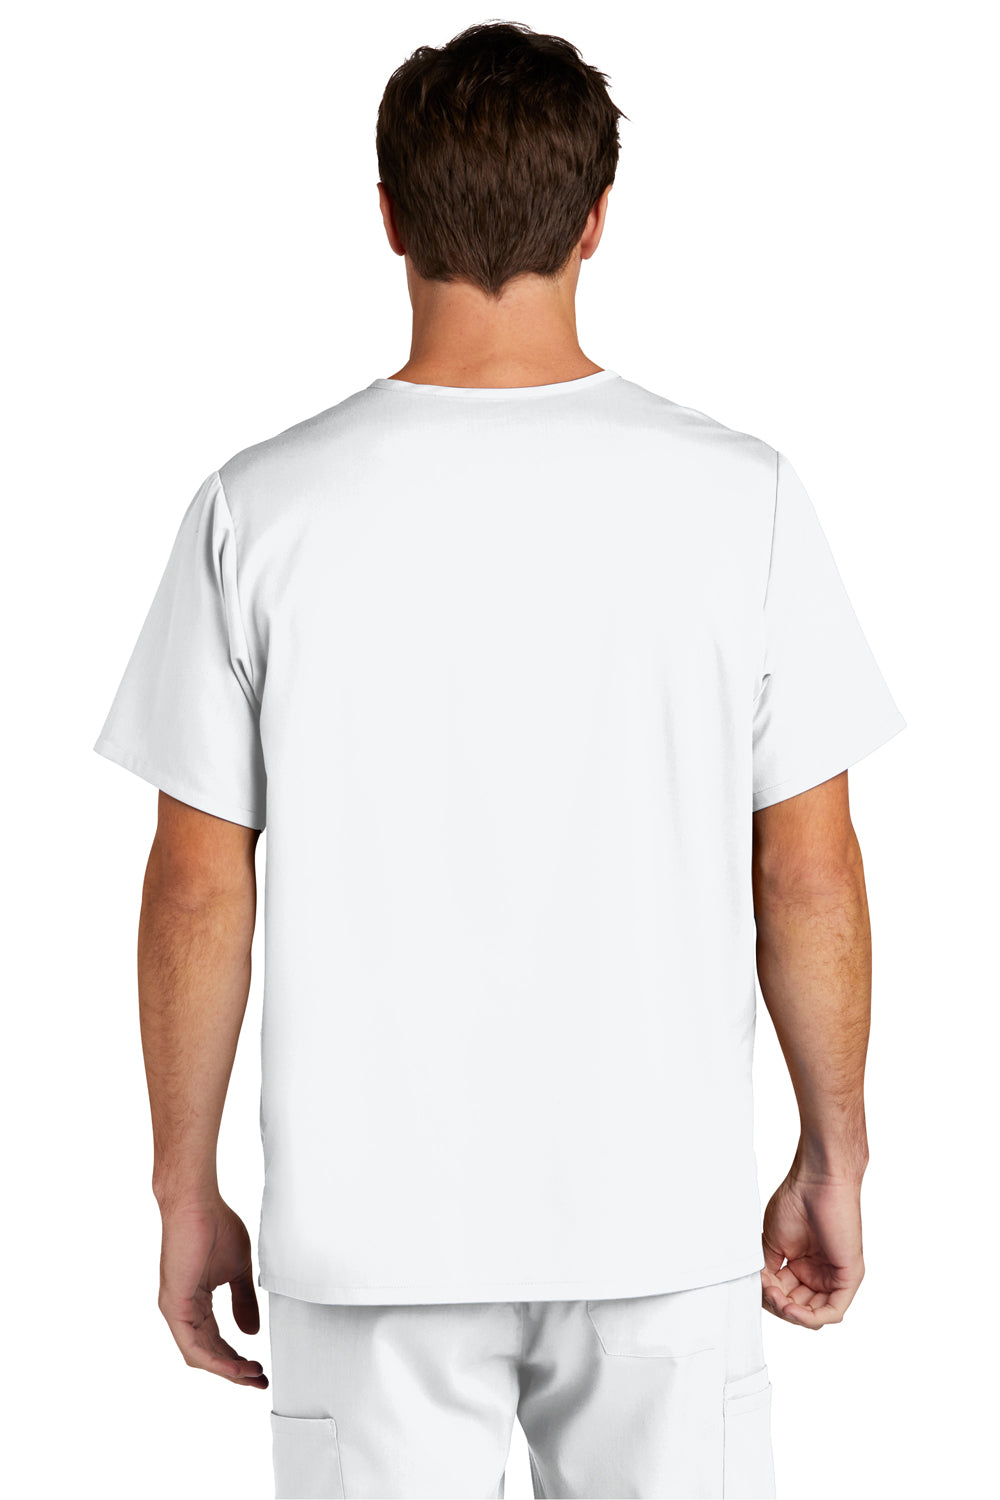 Wonderwink WW5068 Premiere Flex Short Sleeve V-Neck Shirt White Back